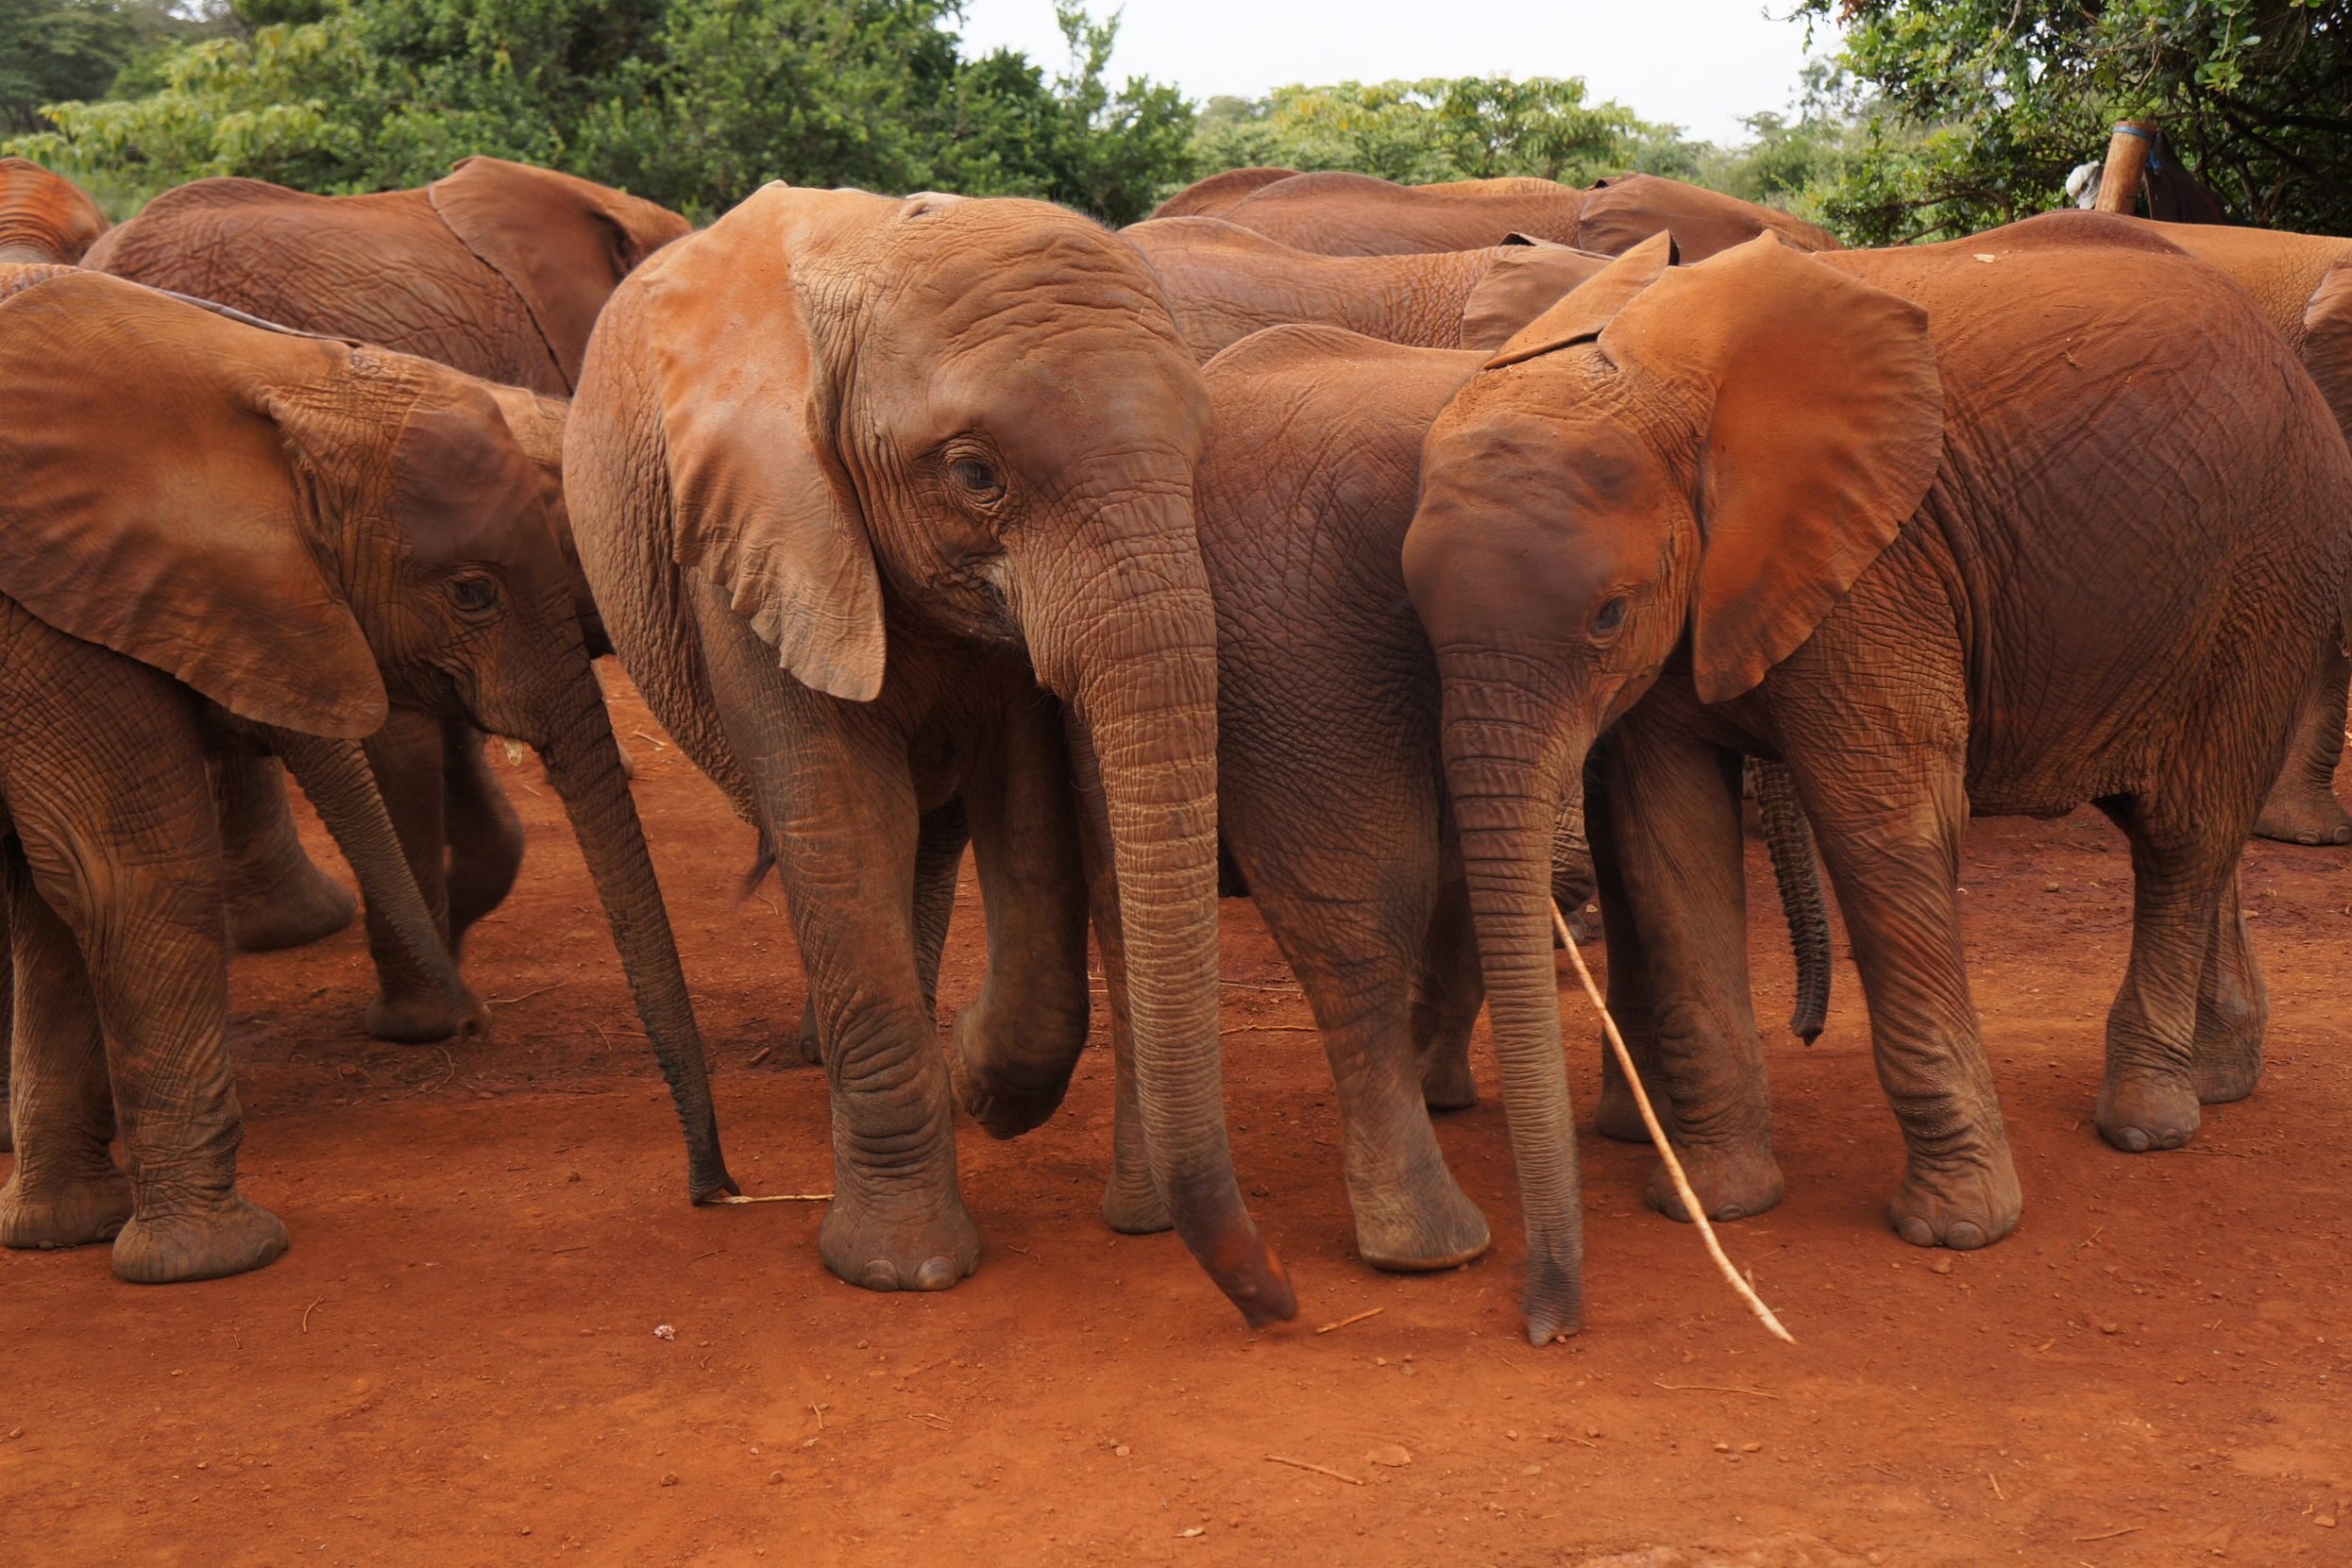 Elephants_orphanage-nairobi-kenya_Tett-Safaris.jpg